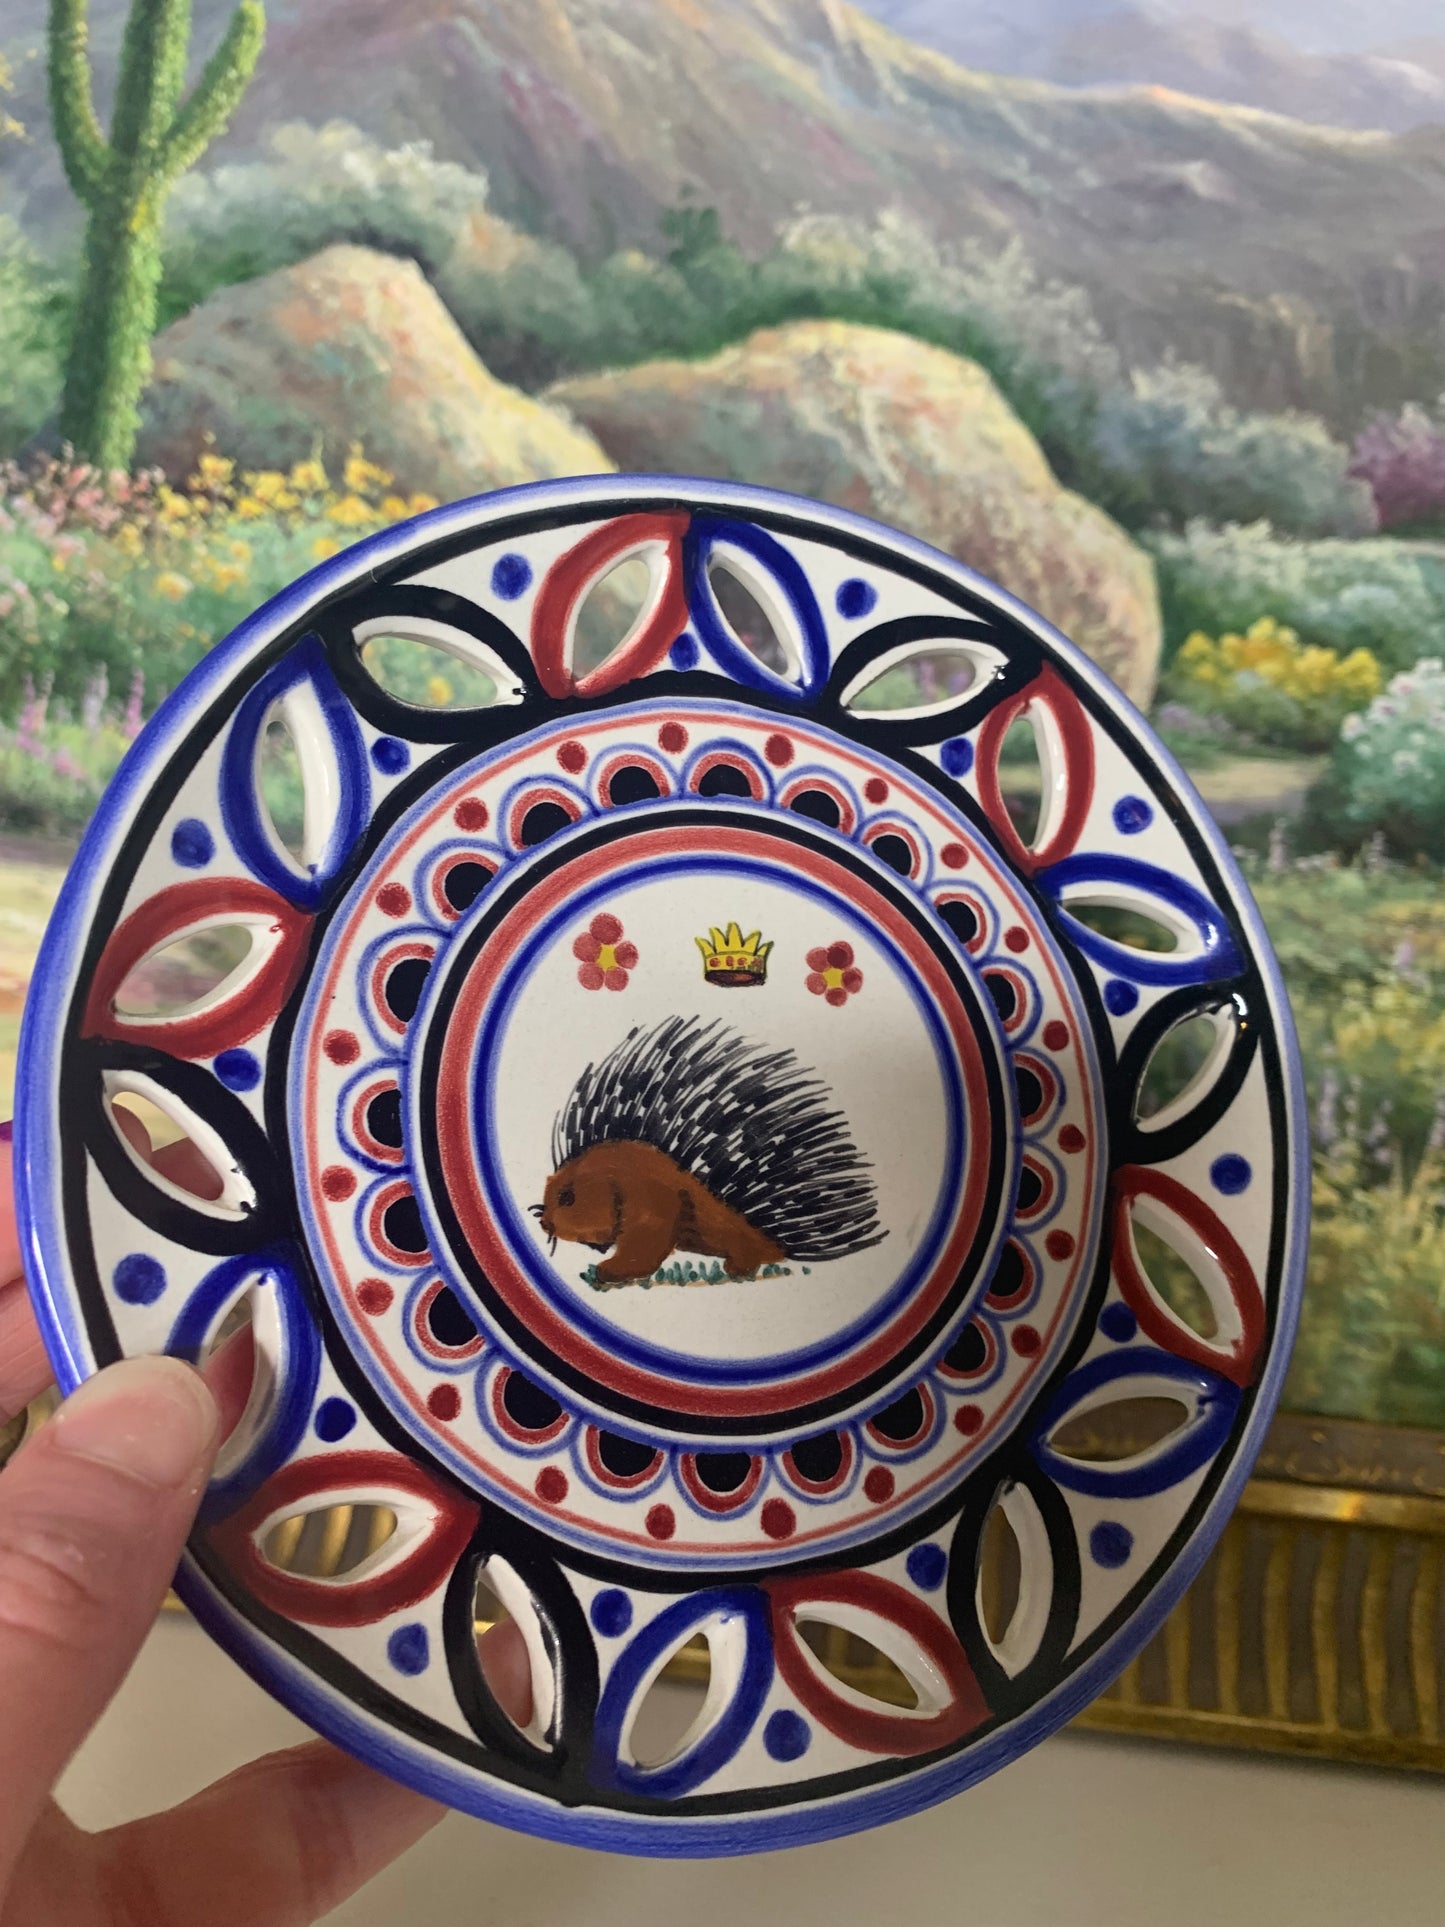 Rare Italian Palio di Siena Porcupine Pottery plate! Excellent condition!